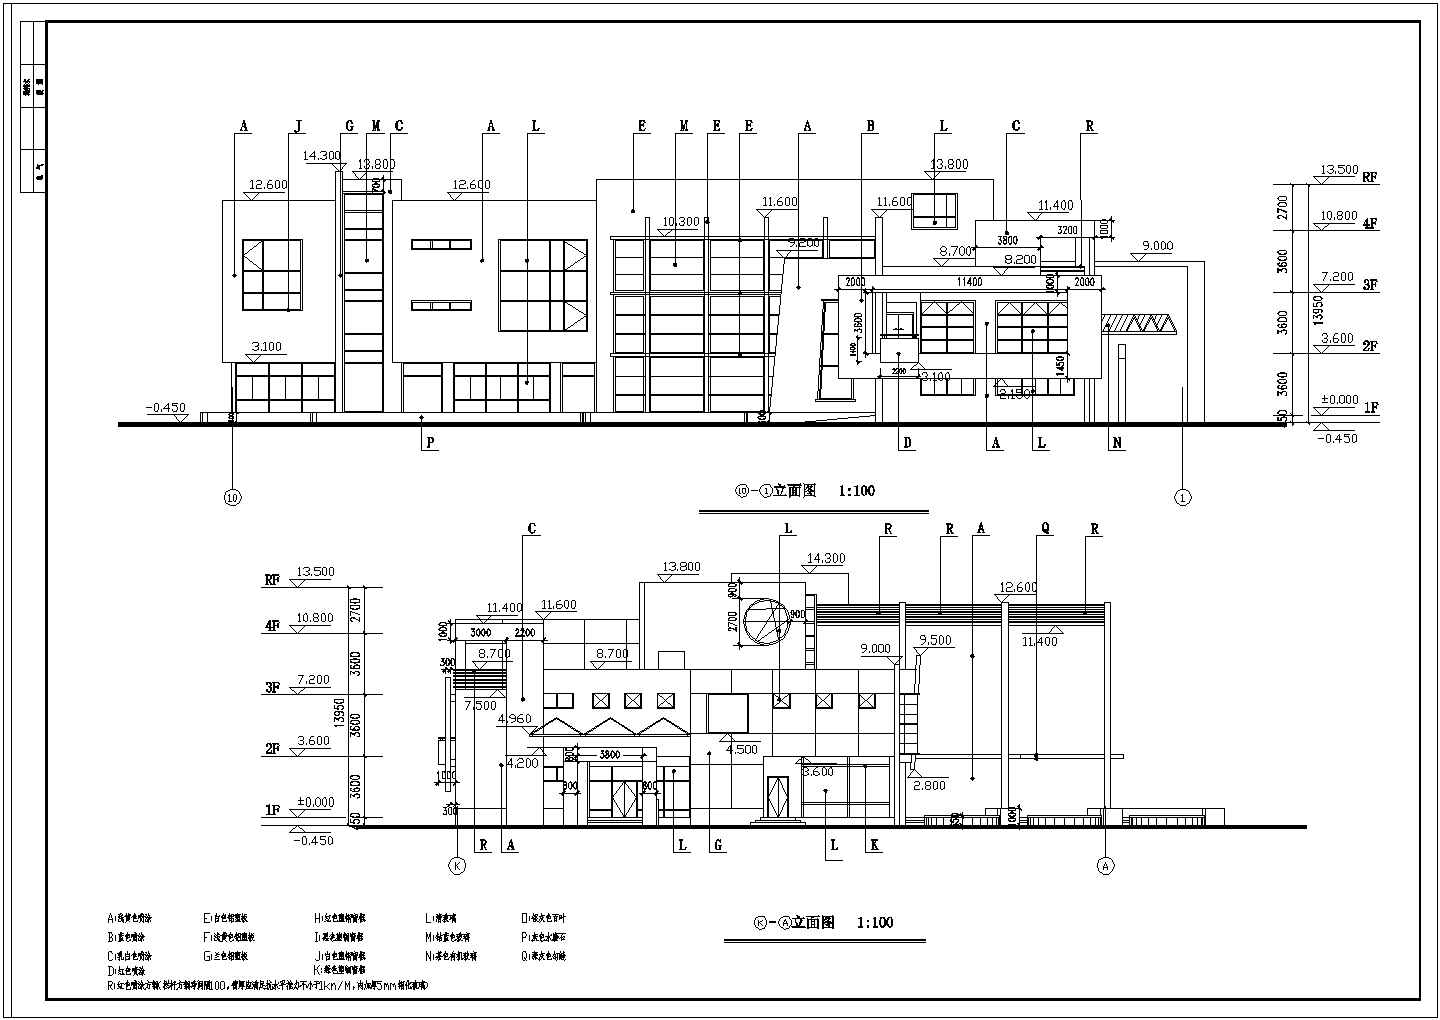 江西省南昌市东湖幼儿园教学楼整体改造建筑设计CAD图纸